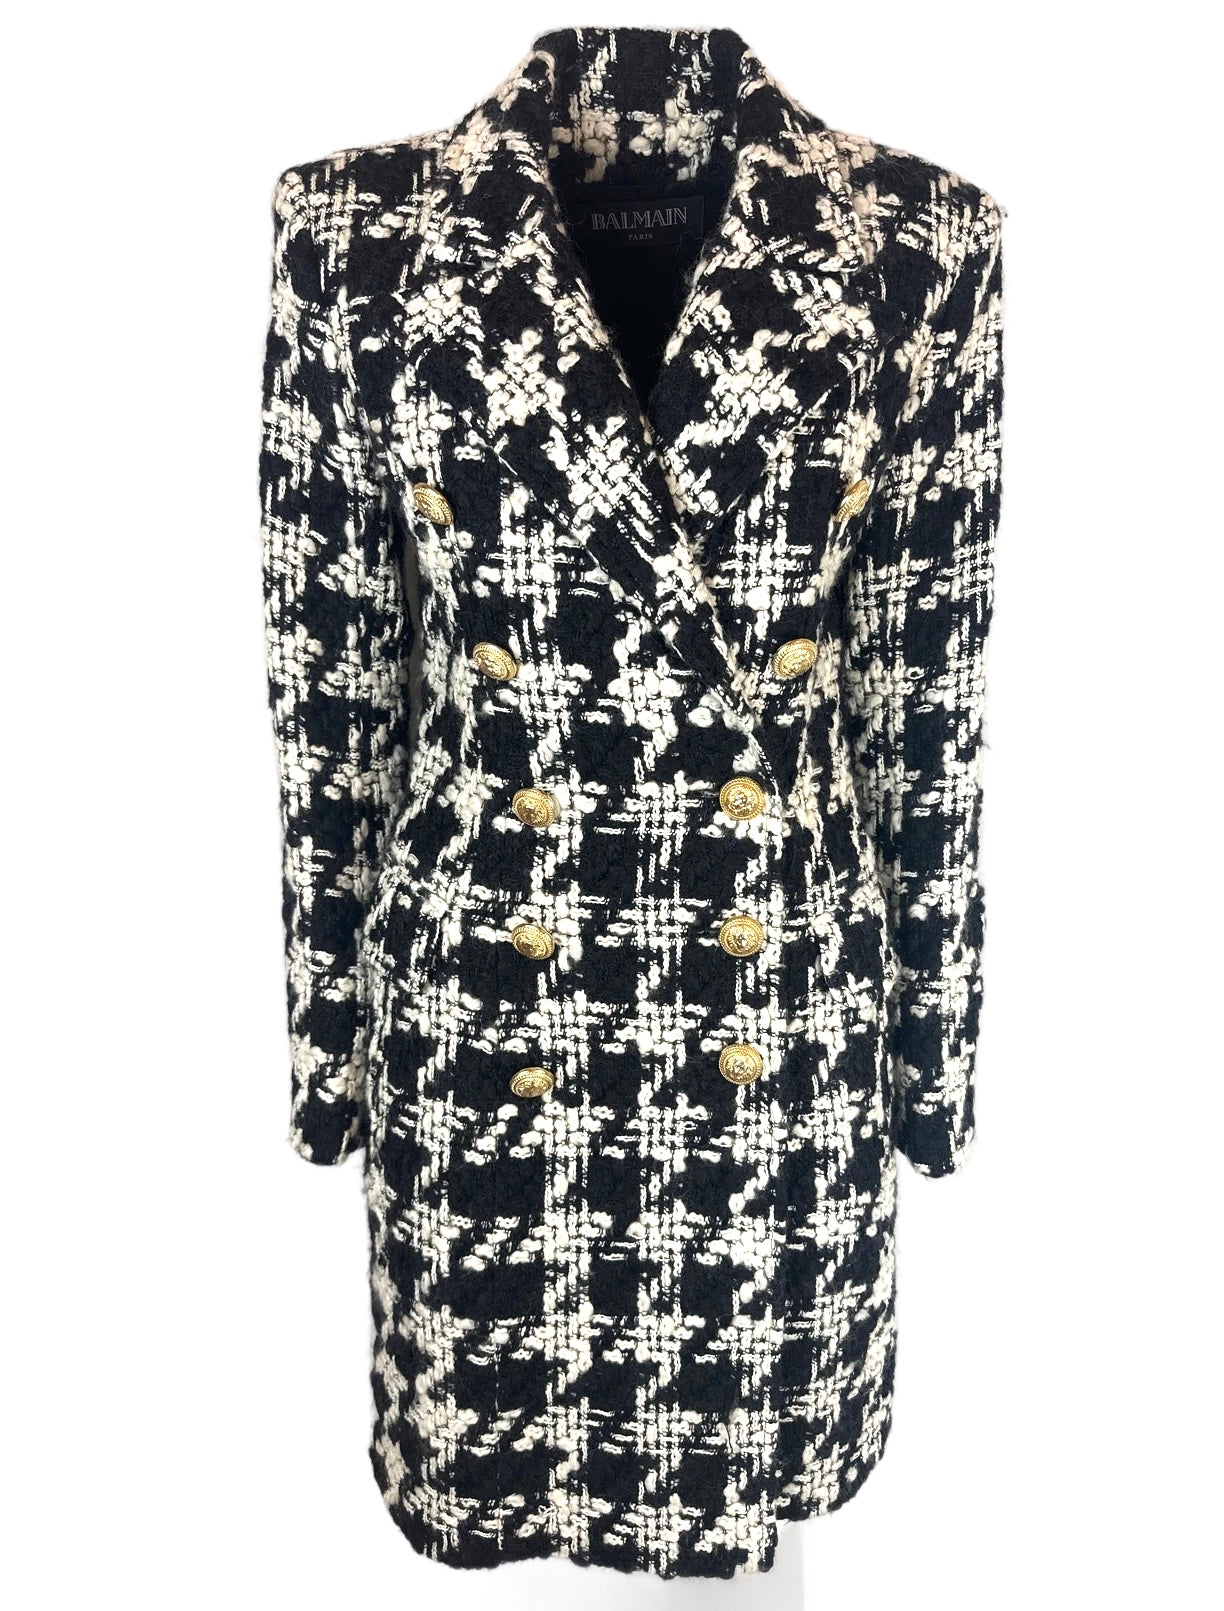 BALMAIN - Long coat tweed black & white size 38 FR